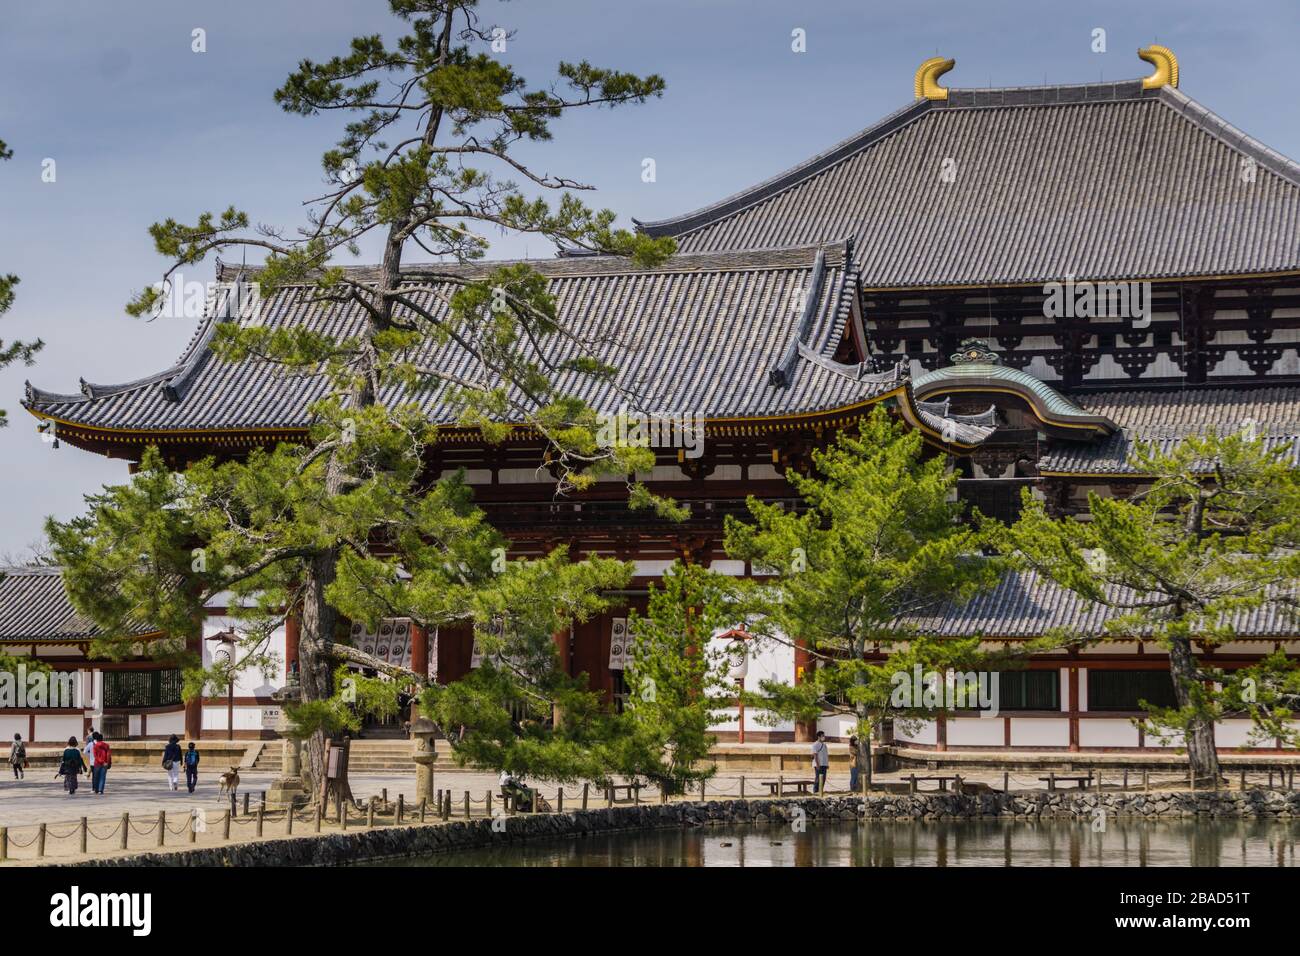 Vue sur le temple Todaiji à Nara, Japon montrant peu de touristes. Pris pendant le ralentissement du tourisme en raison de la pandémie COVID-19. Banque D'Images